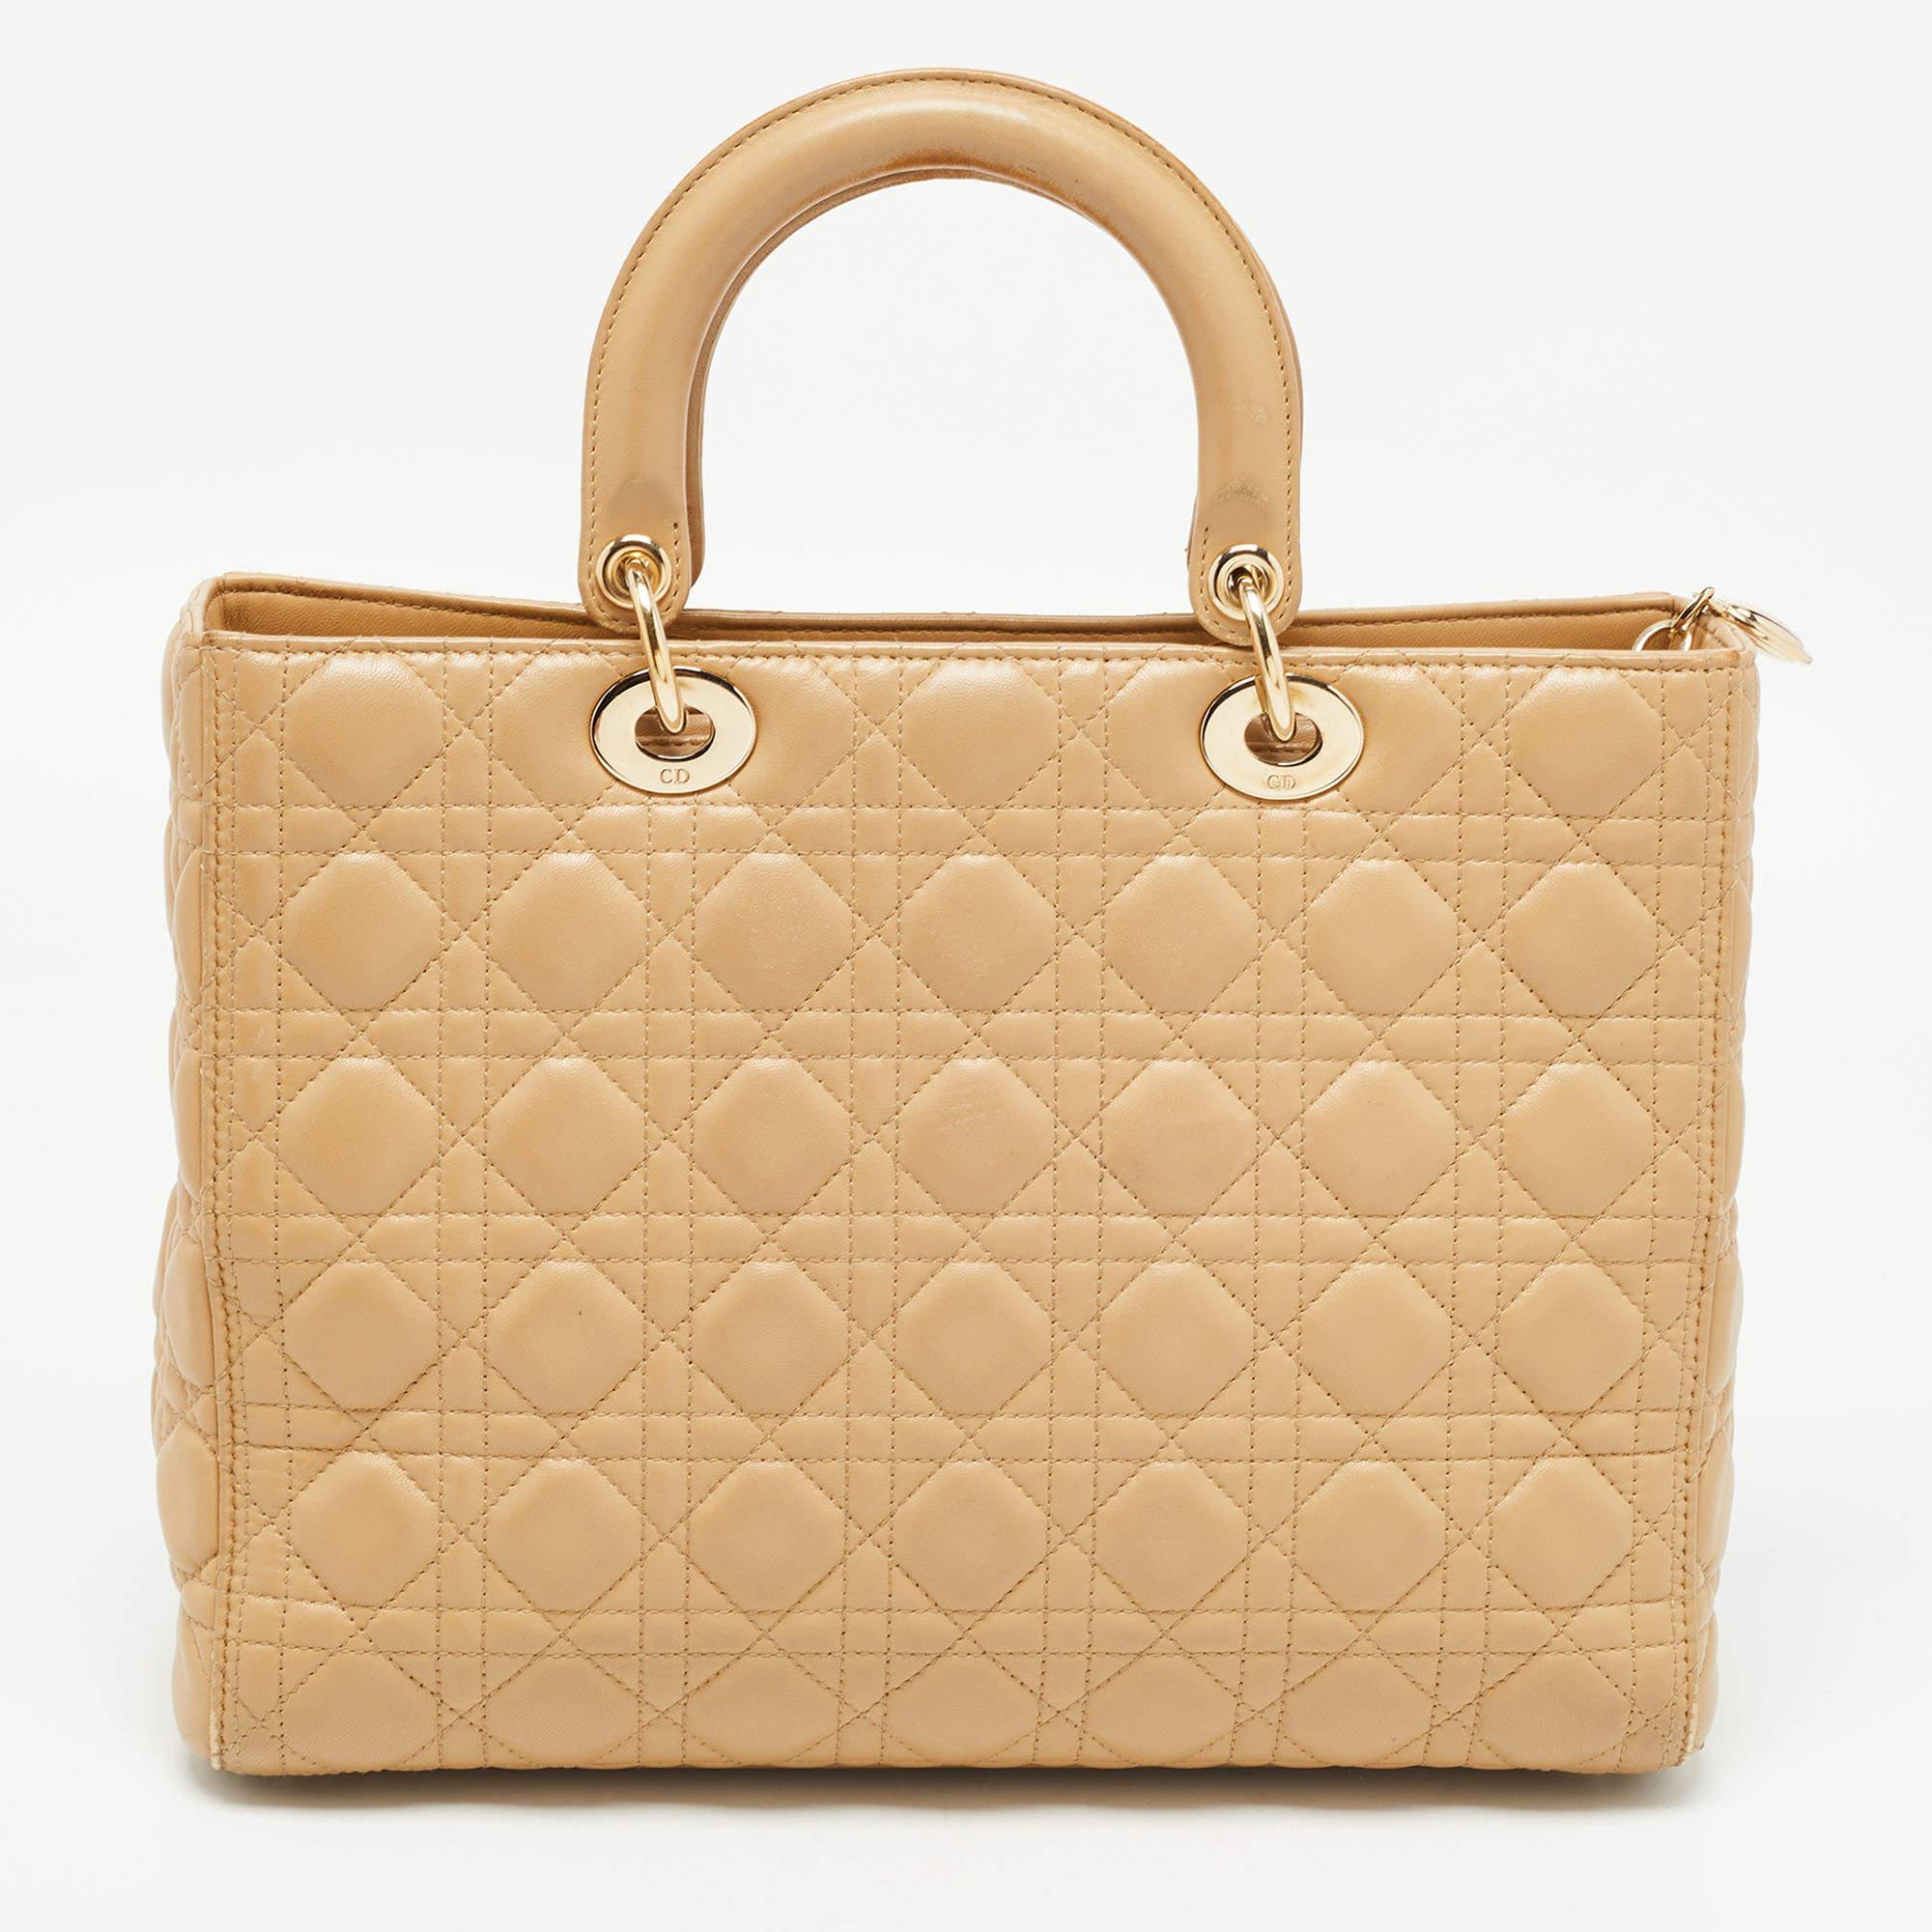 Eine klassische Handtasche verspricht dauerhafte Attraktivität und unterstreicht Ihren Stil immer wieder aufs Neue. Diese Tasche von Lady Dior ist eine solche Kreation. Das ist ein guter Kauf.

Enthält: Echtheitskarte, Infobroschüre, abnehmbarer